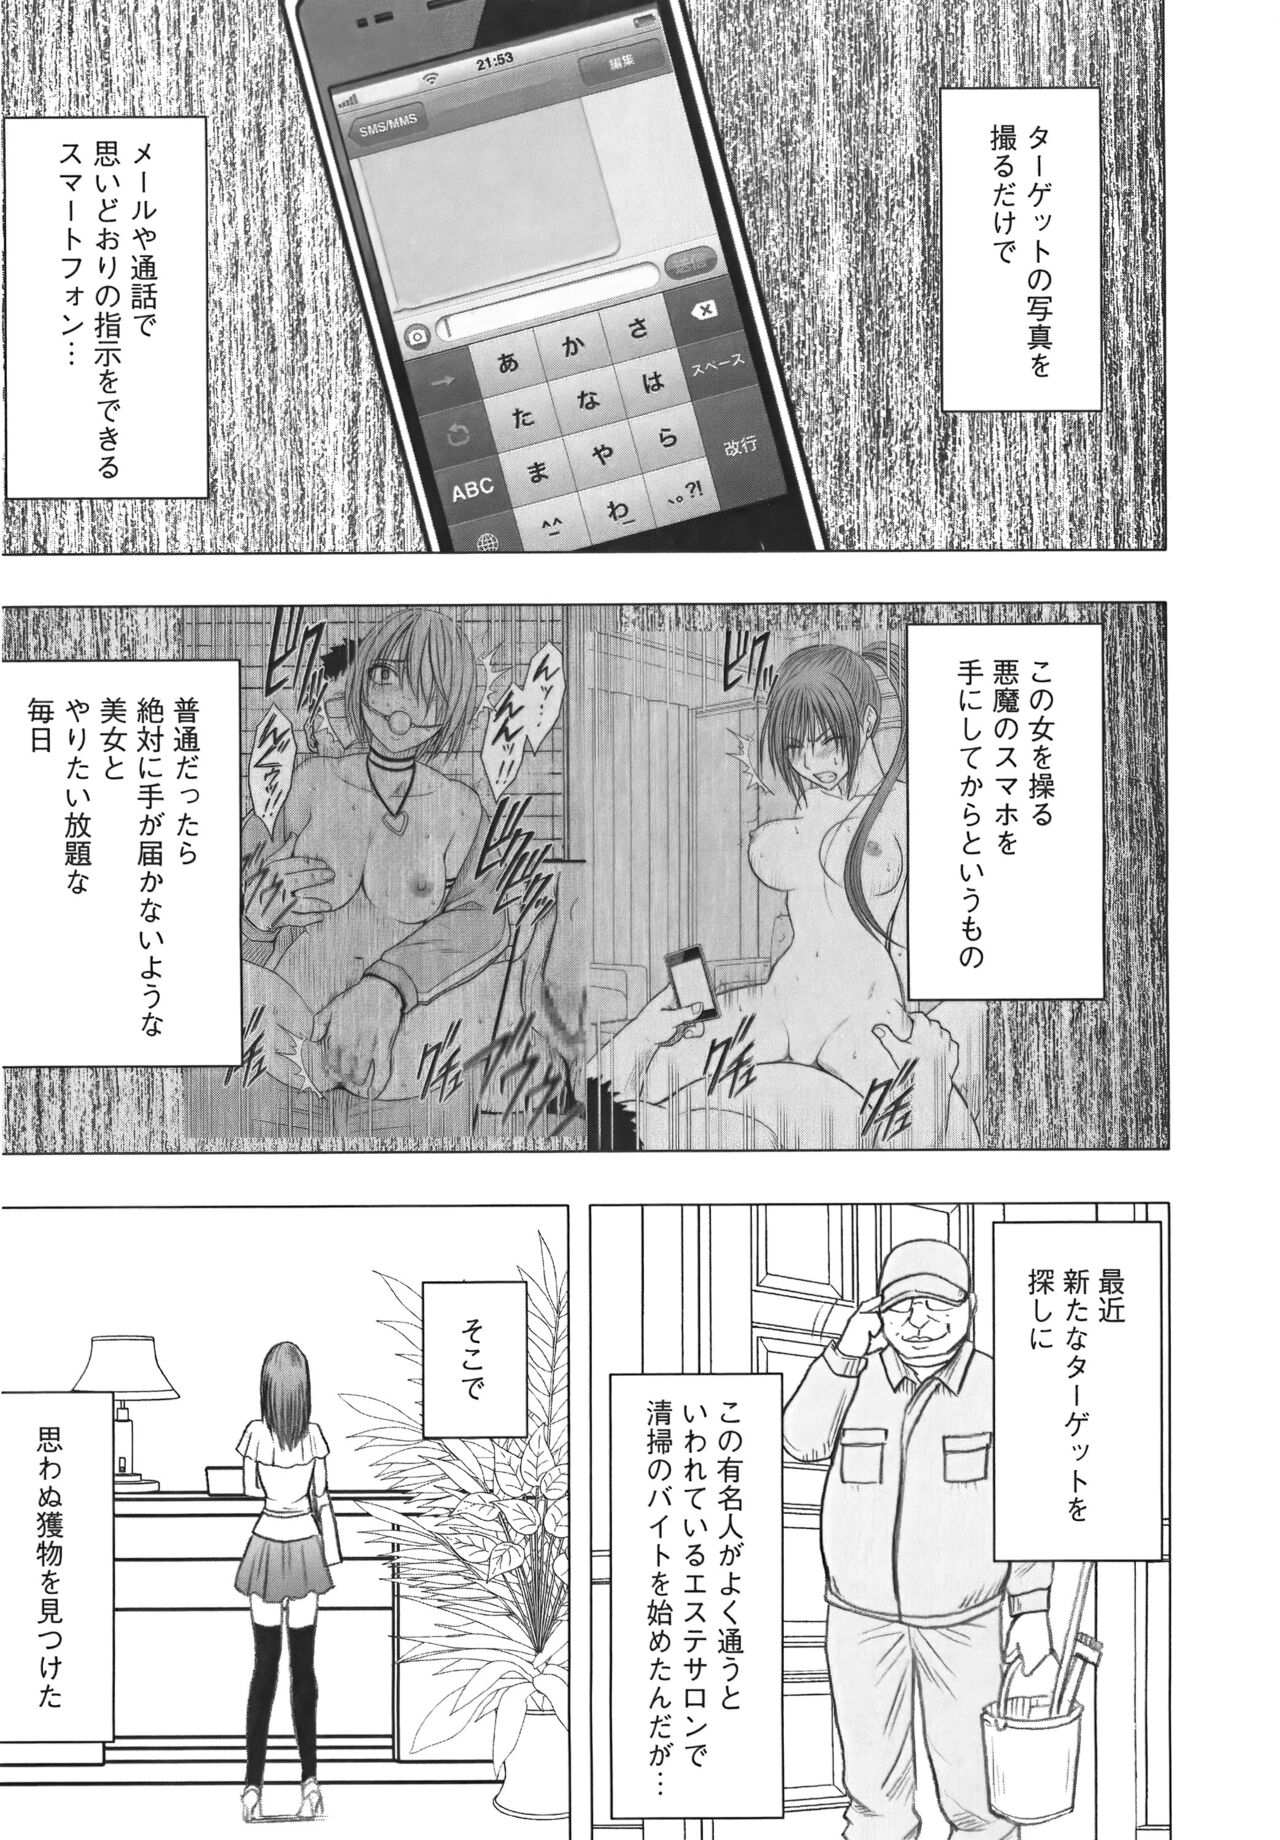 [Crimson] Idol Kyousei Sousa Vol.1 Smartphone de Meireishita Koto ga Genjitsu ni [Complete Edition] 240